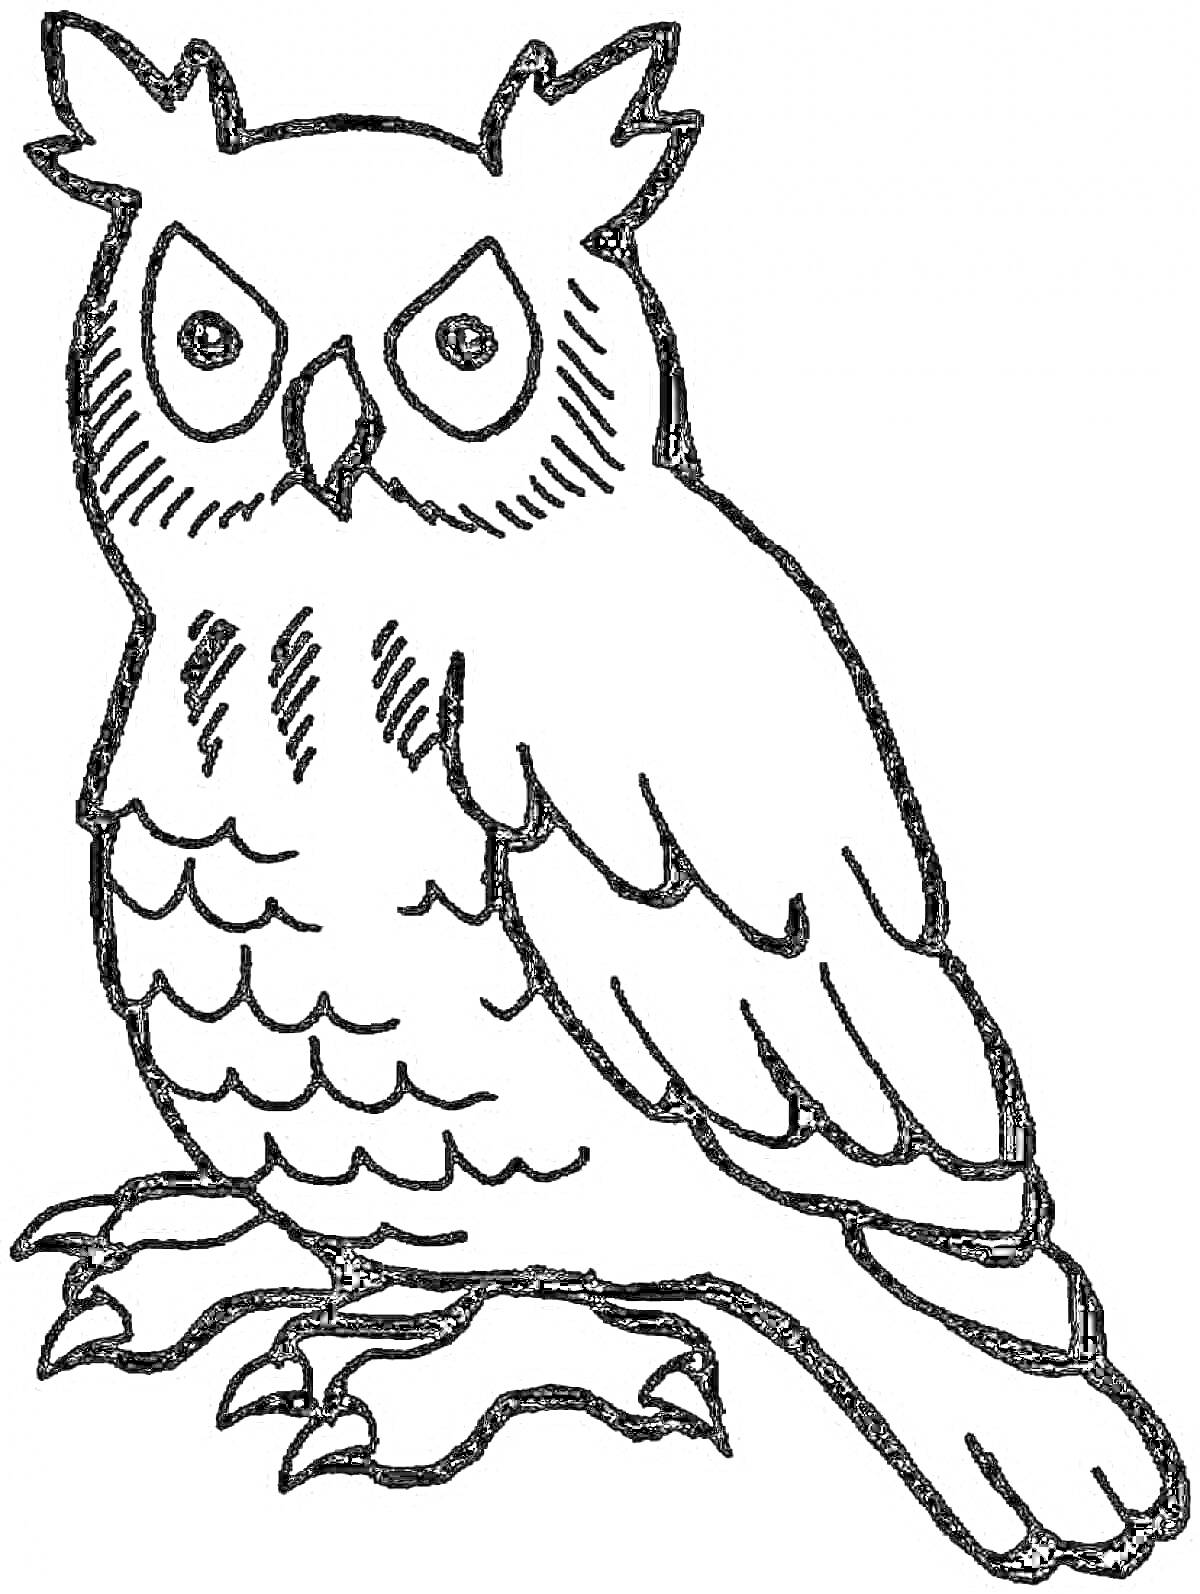 Раскраска Филин с большими глазами, хохолком и перьями, стоящий на лапах